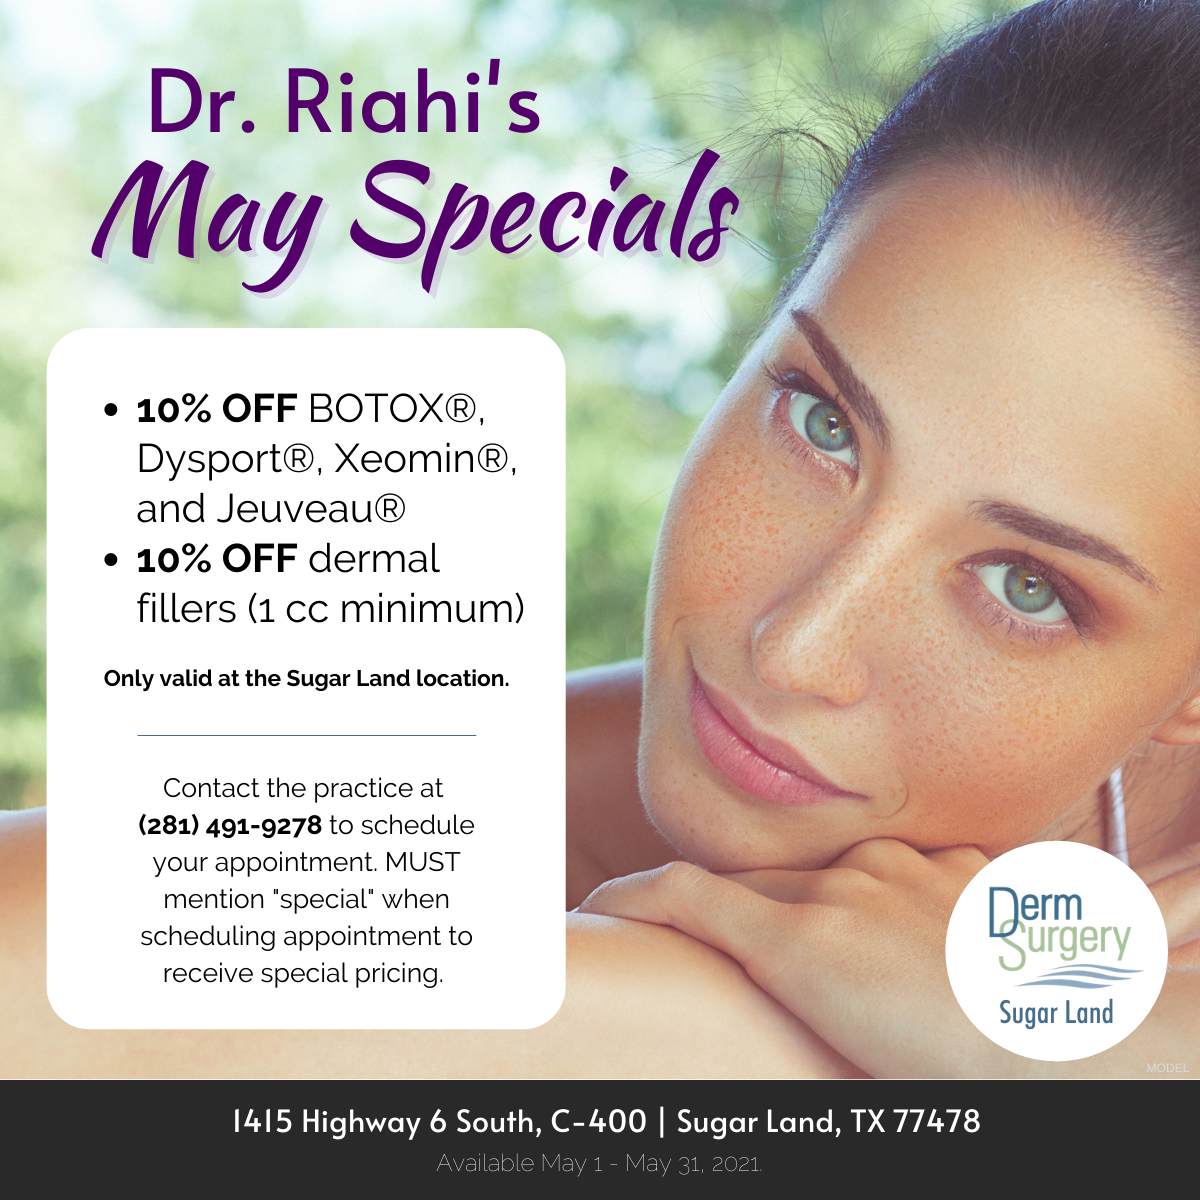 Dr. Riahi's May Specials